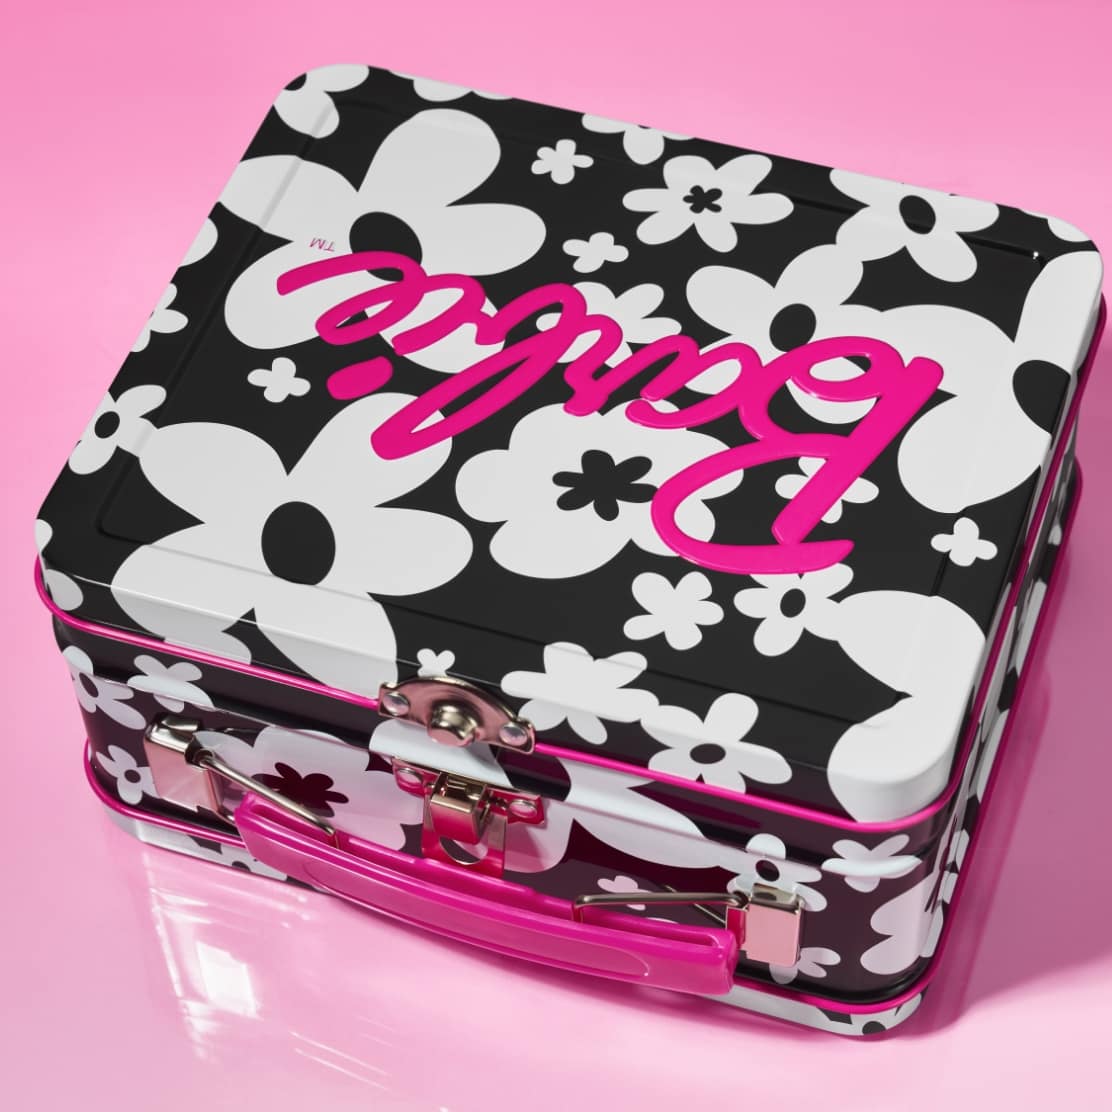 Imagen uno. Una caja de Barbie inspirada en una fiambrera con un estampado floral en blanco y negro y detalles en rosa fucsia.